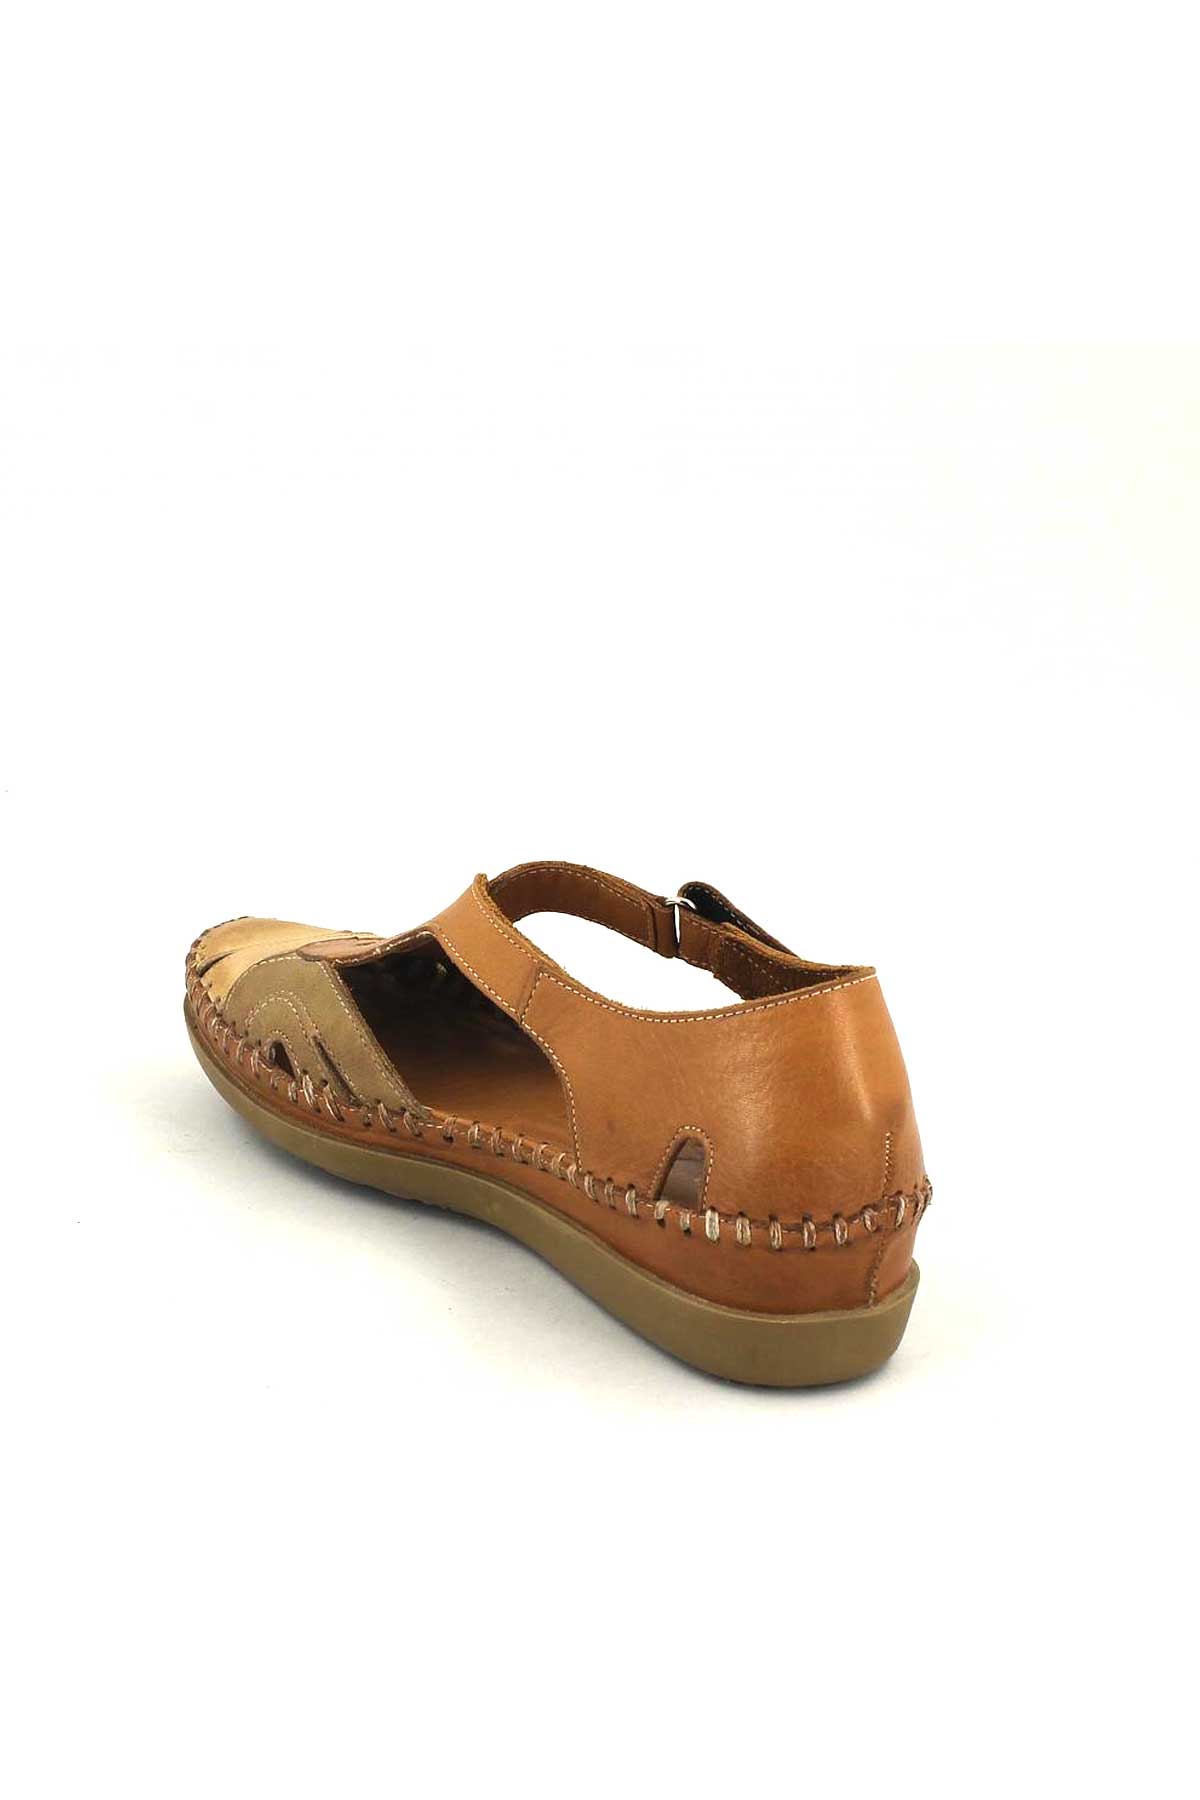 Kadın Comfort Sandalet Taba Bej 18793502